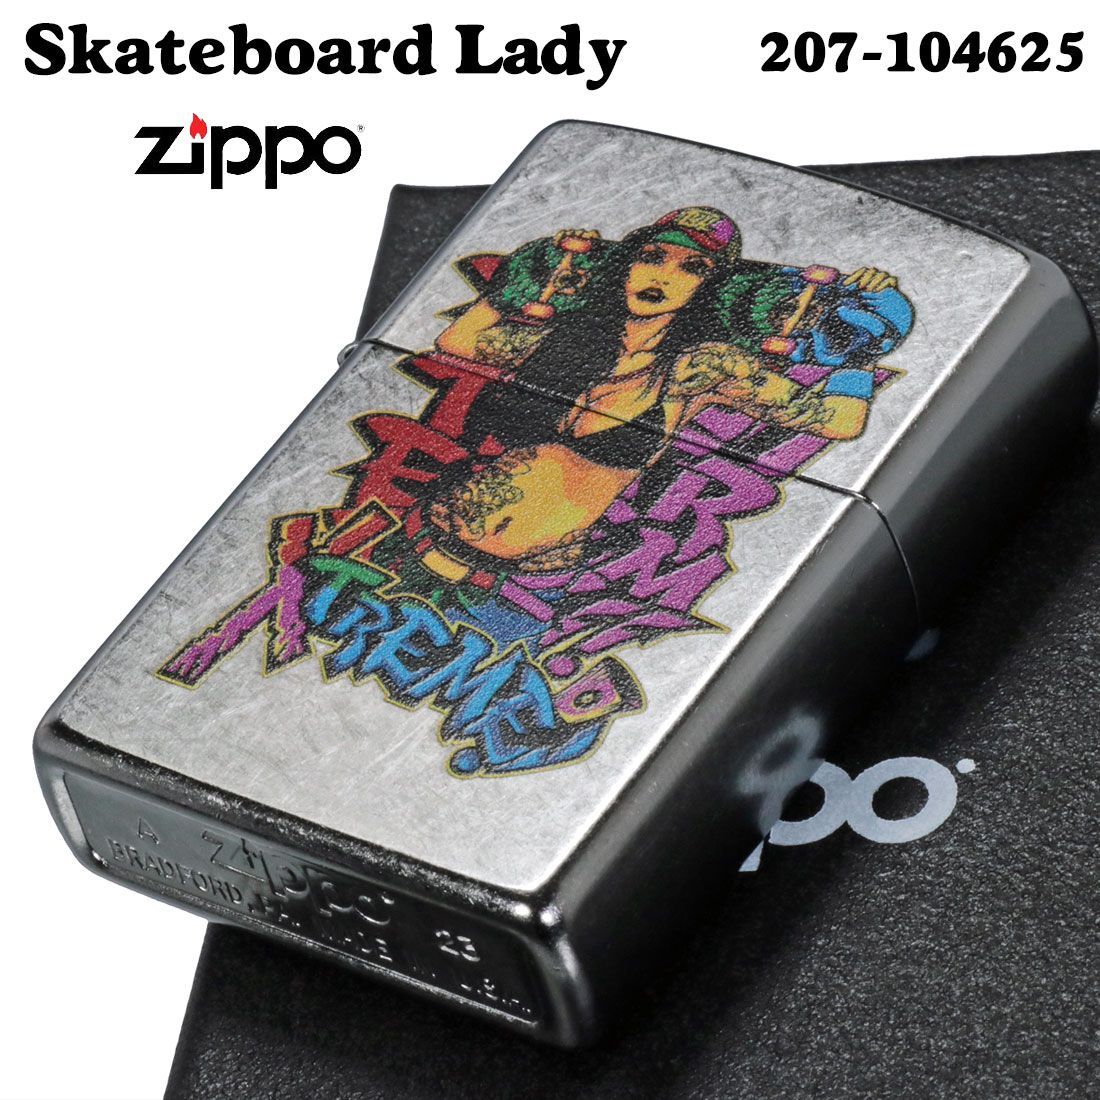 zippo(ジッポーライター) Skateboard Lady セクシー スケートボード 